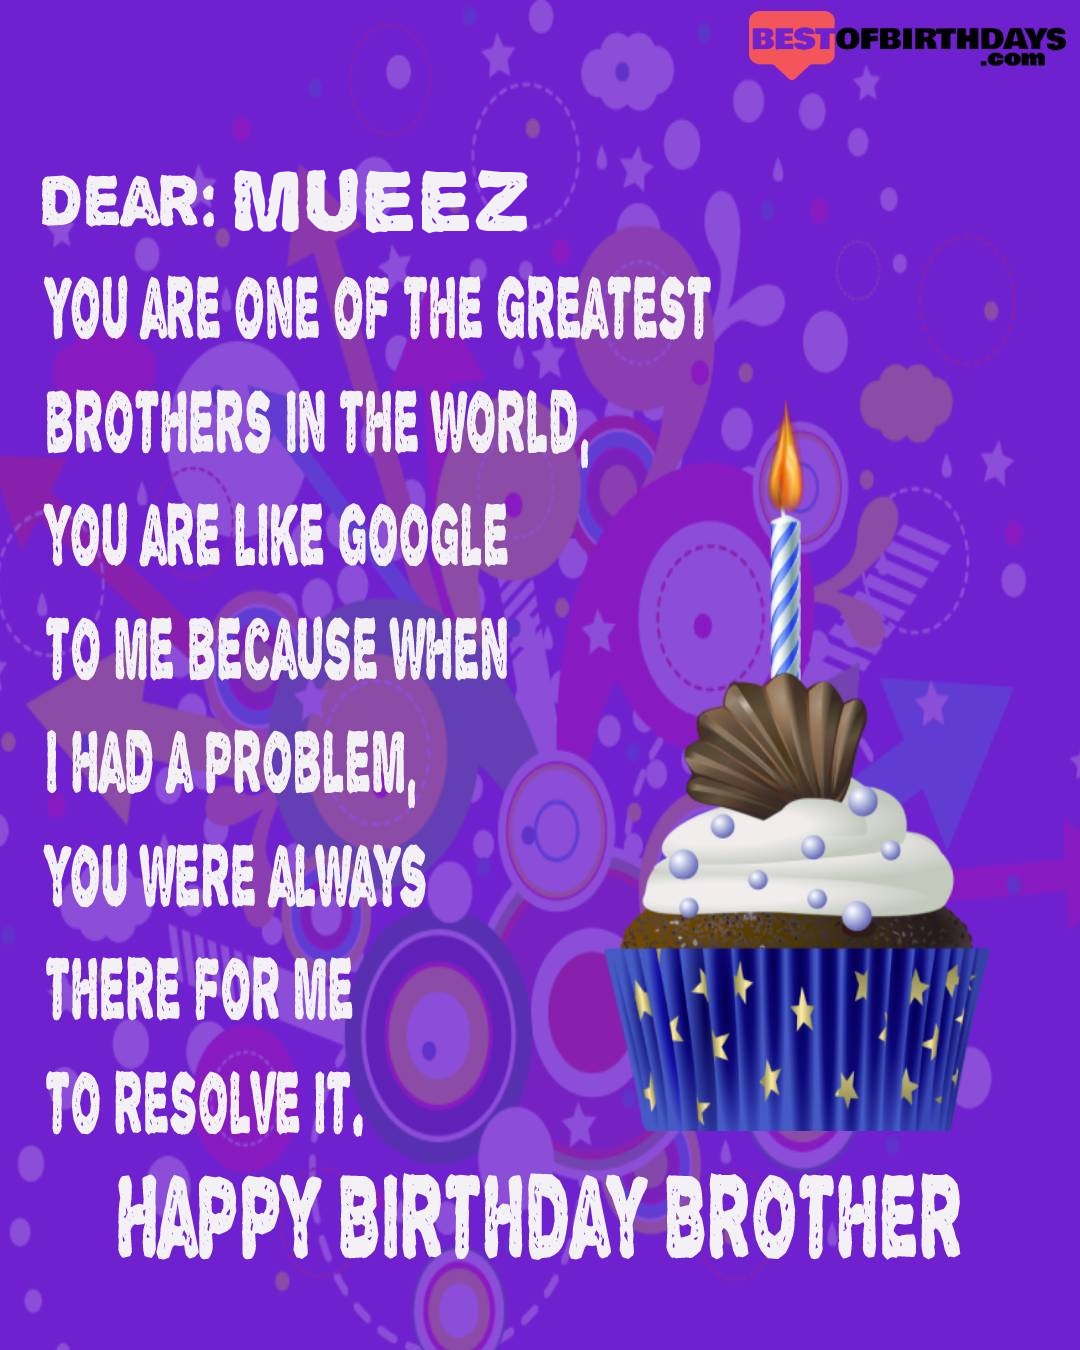 Happy birthday mueez bhai brother bro